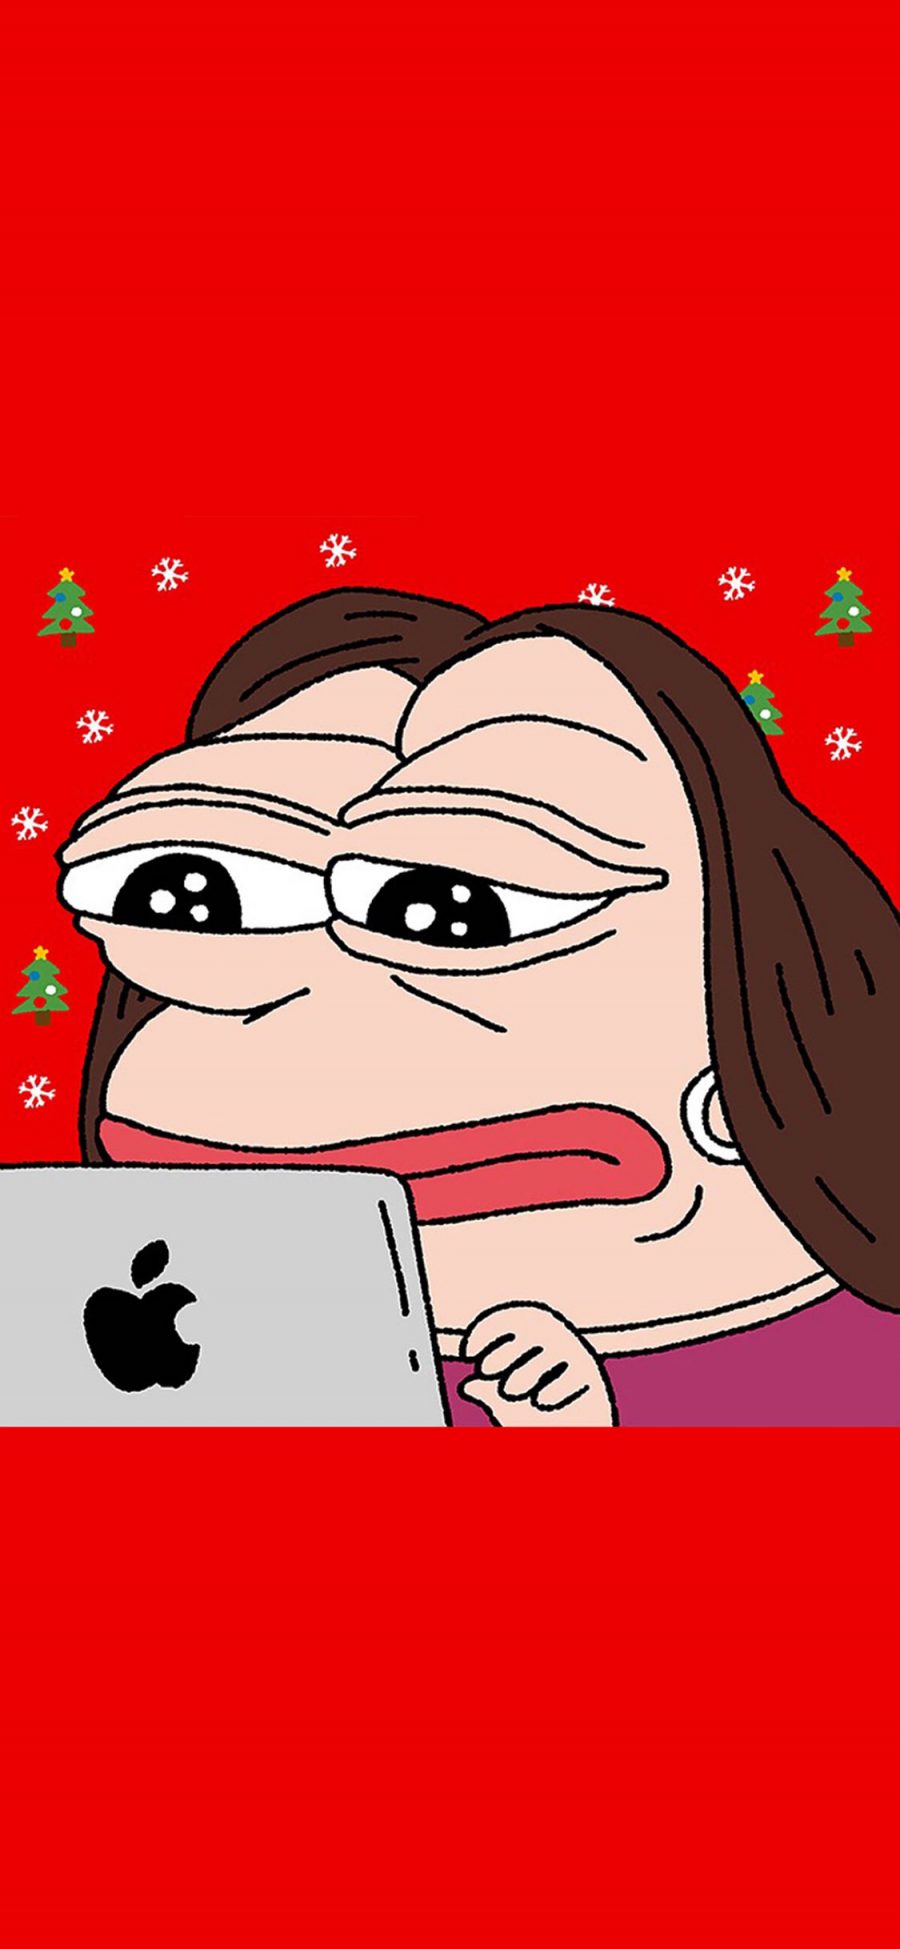 [2436×1125]红色背景 悲伤蛙 卡通 苹果电脑 苹果手机动漫壁纸图片